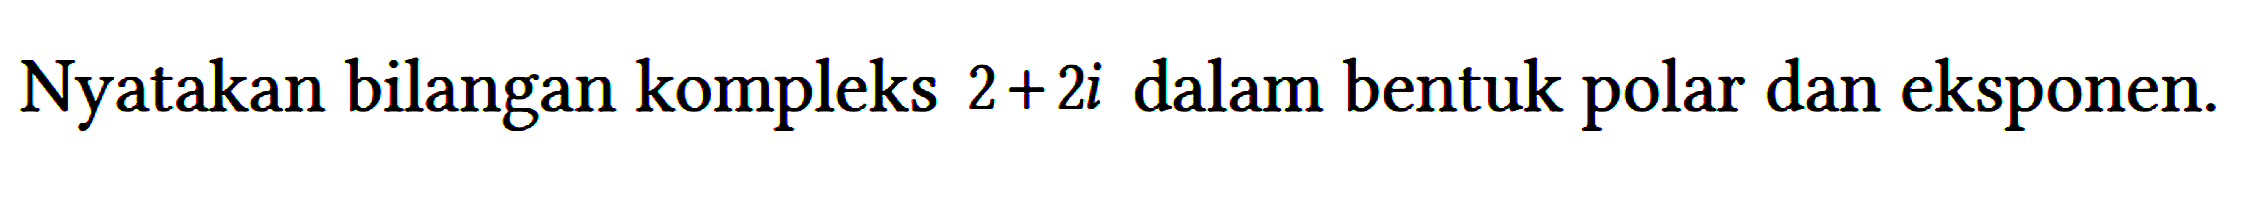 Nyatakan bilangan kompleks 2 + 2i dalam bentuk polar dan eksponen.